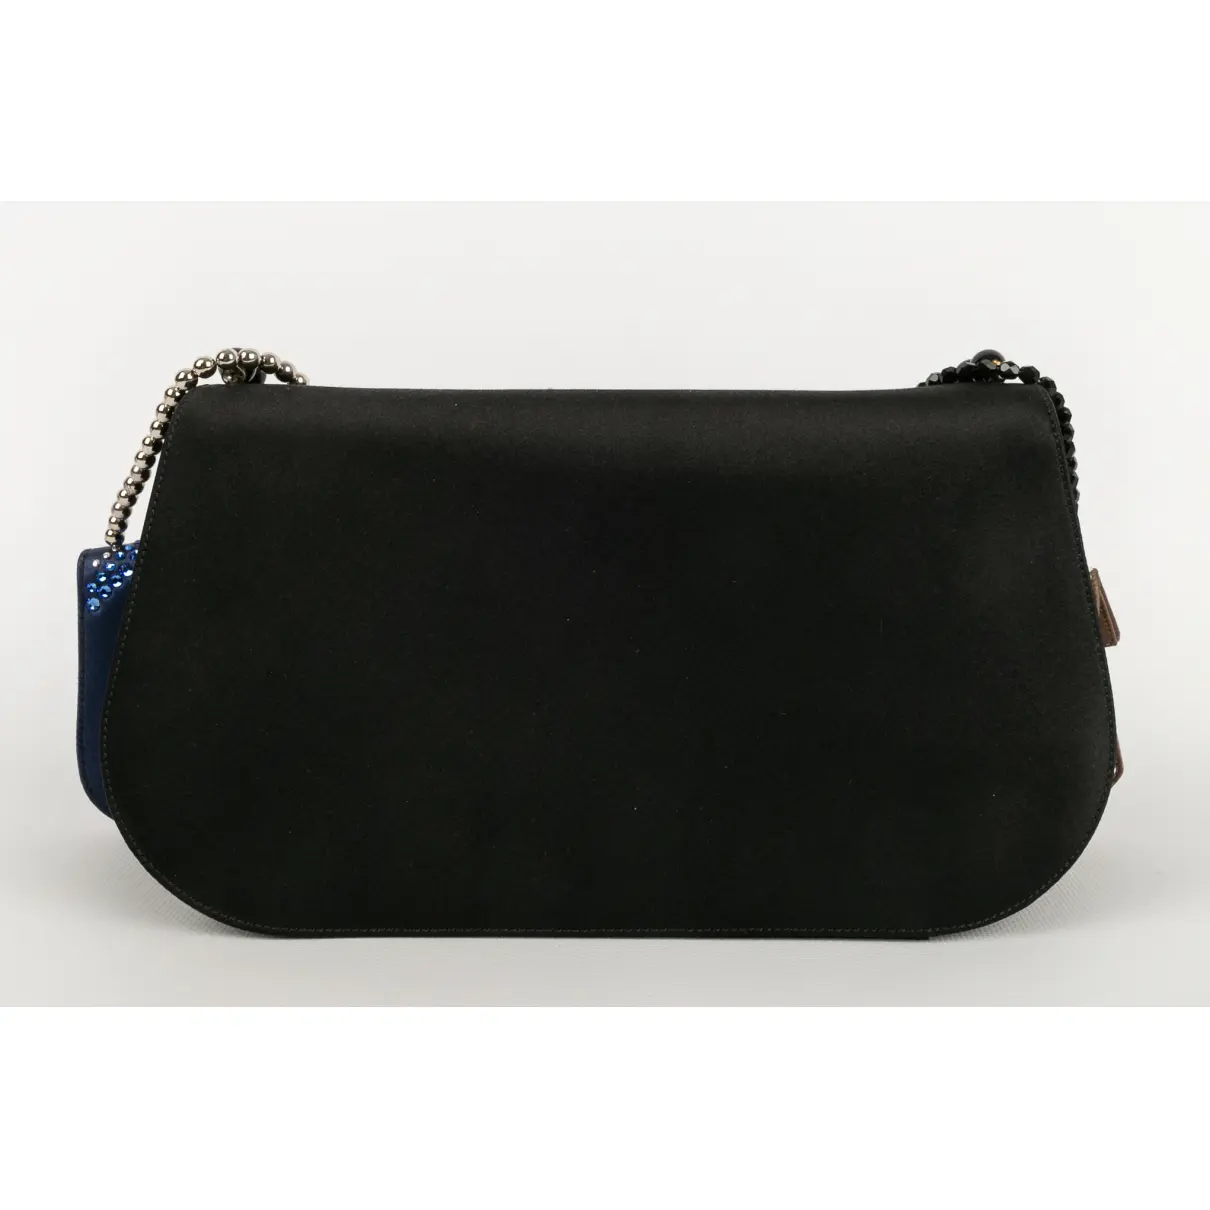 Leather handbag RENAUD PELLEGRINO - Vintage